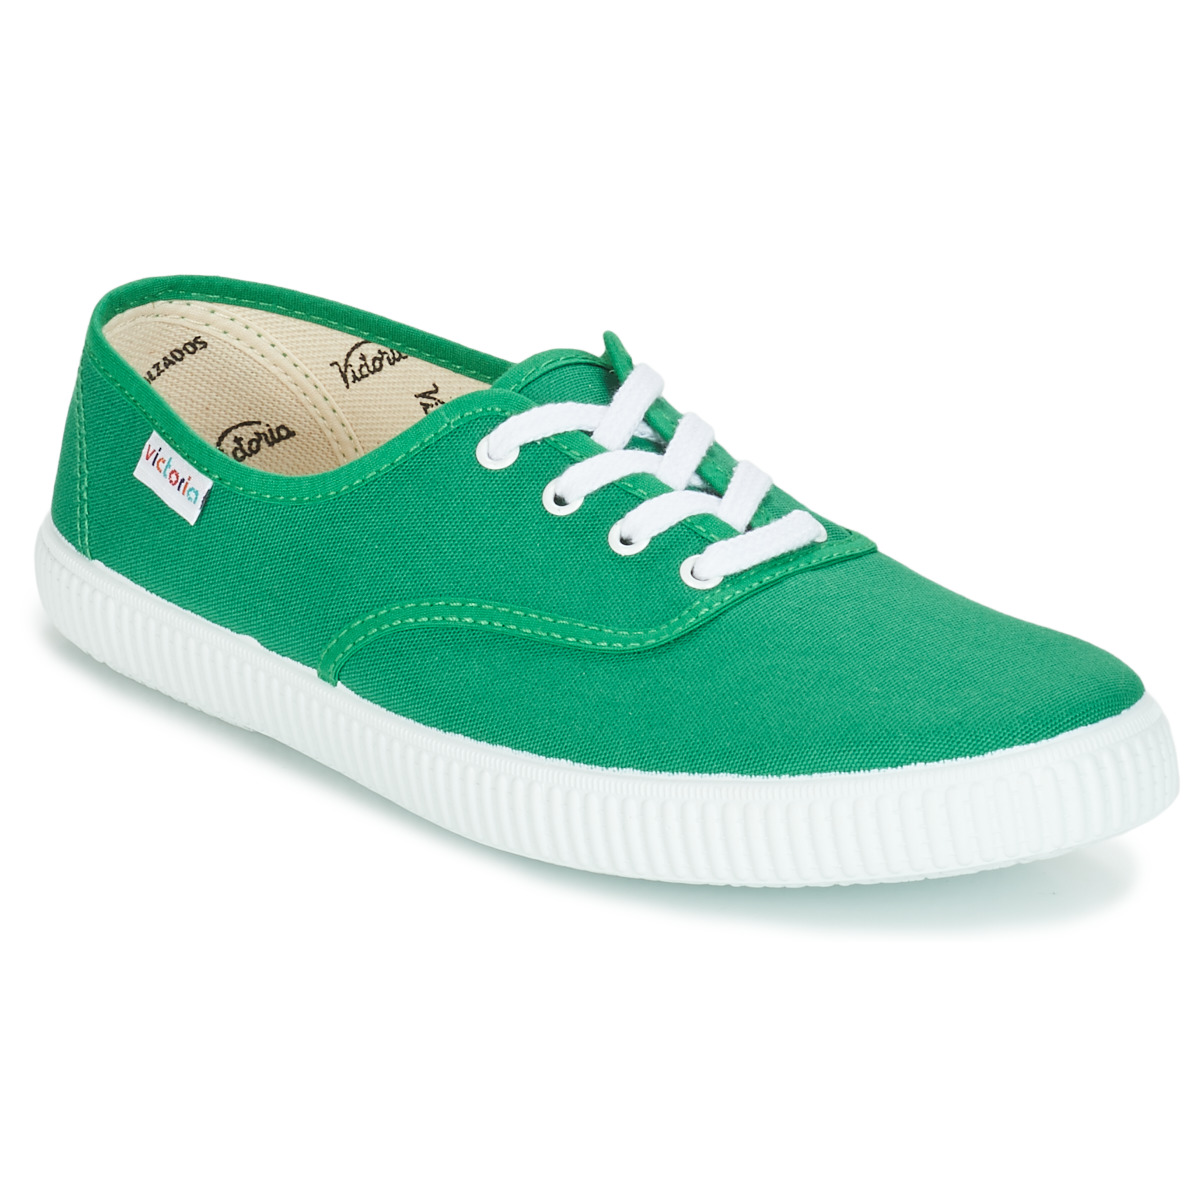 Victoria Zapatillas de lona 106500 Mujer KAKI Verde - Envío gratis